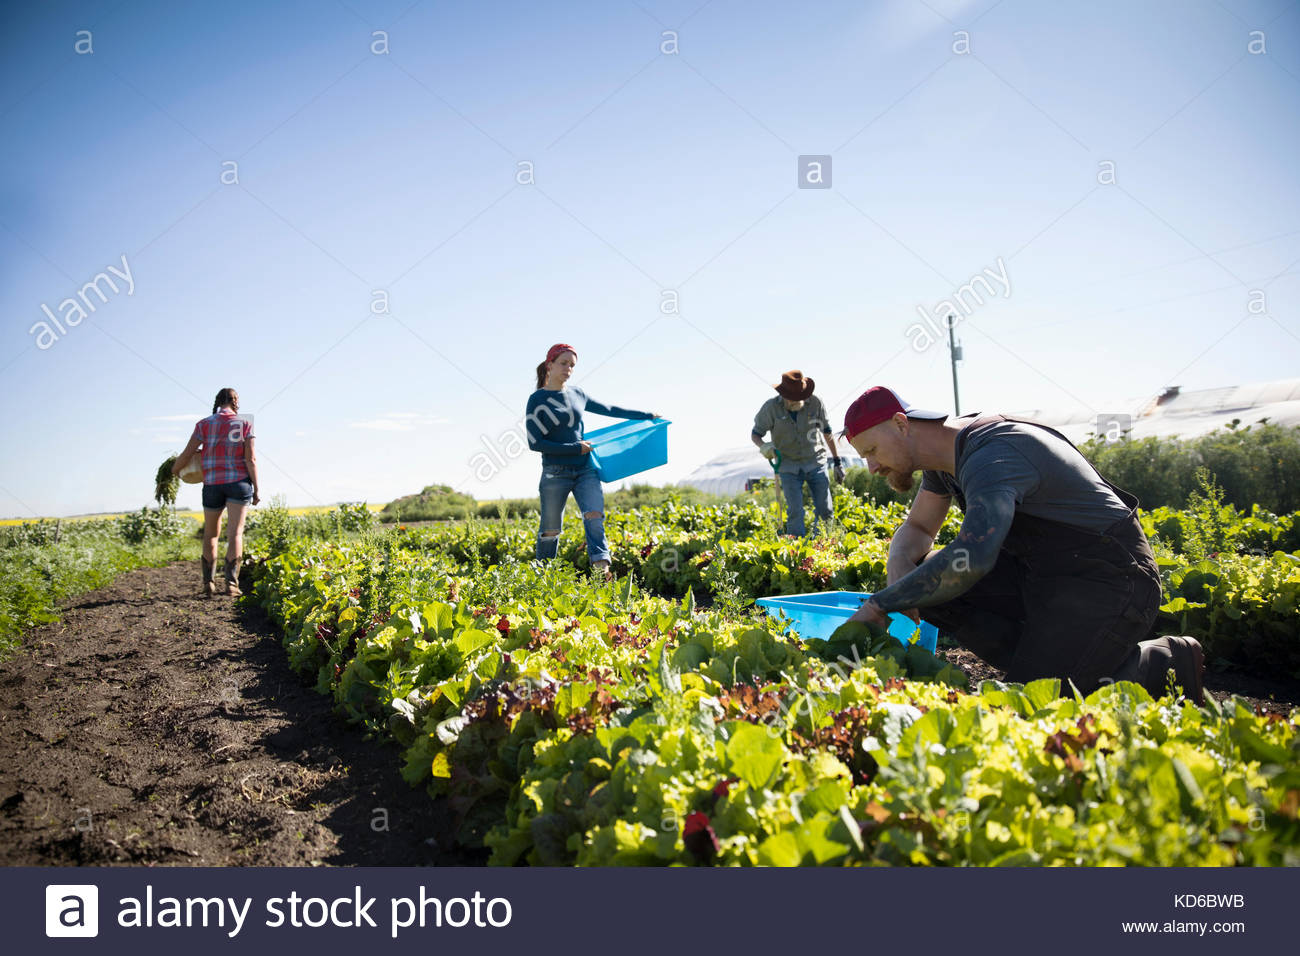 Farmers harvesting lettuce in vegetable garden on sunny farm Stock Photo